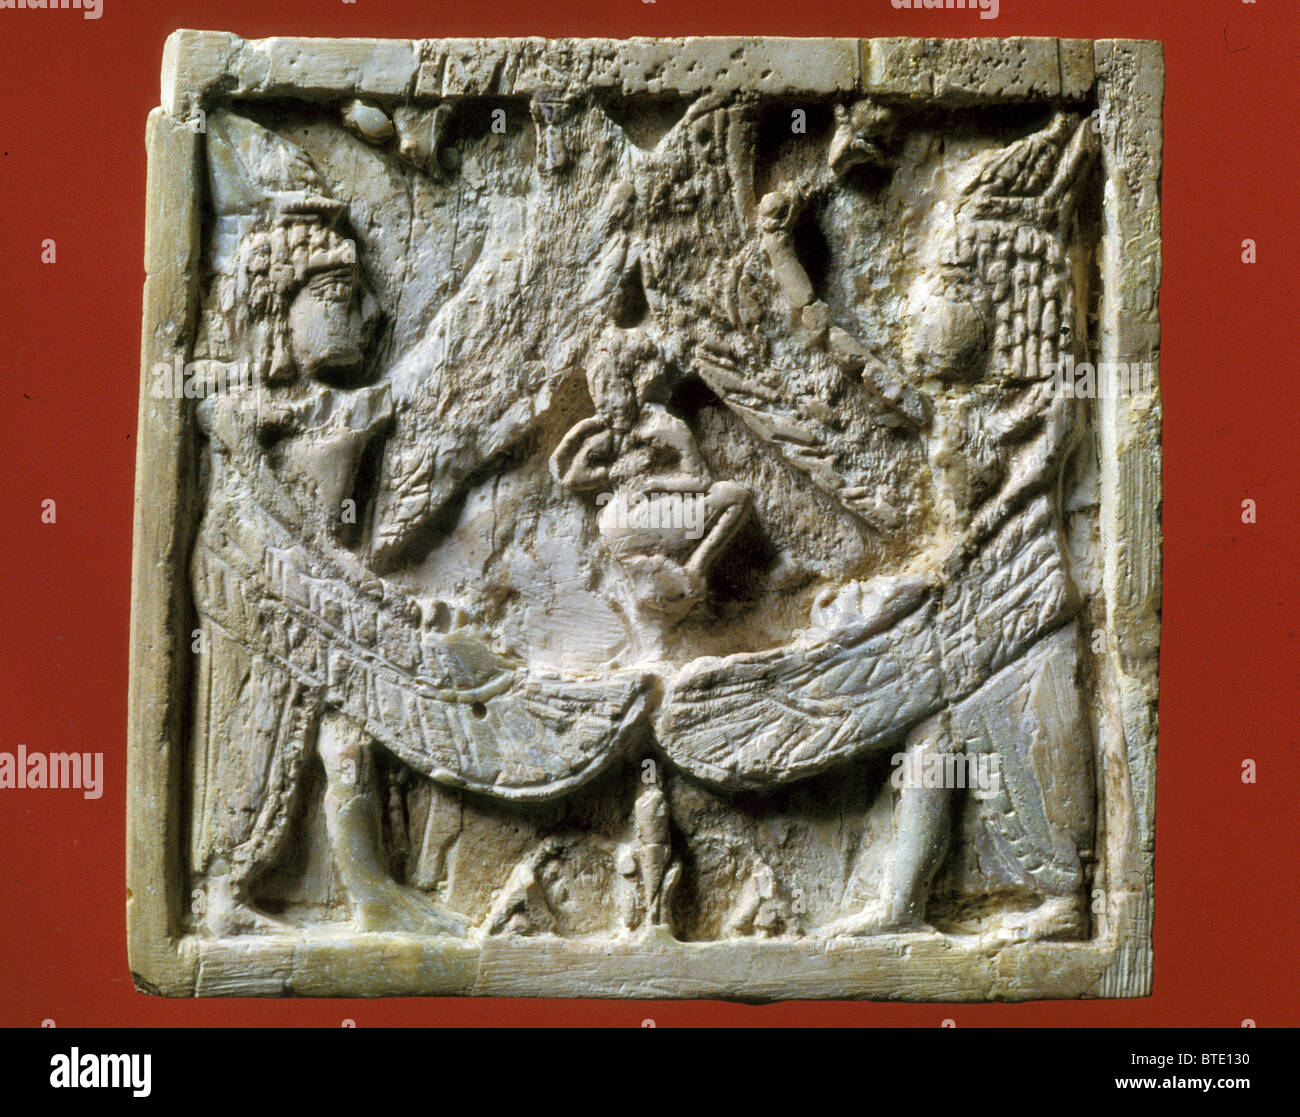 4B. Placa de marfil representando dos criaturas aladas albergando a una persona. Siria; Arslan Tash, 8ª. C. A.C. se situó "por encima de la Foto de stock